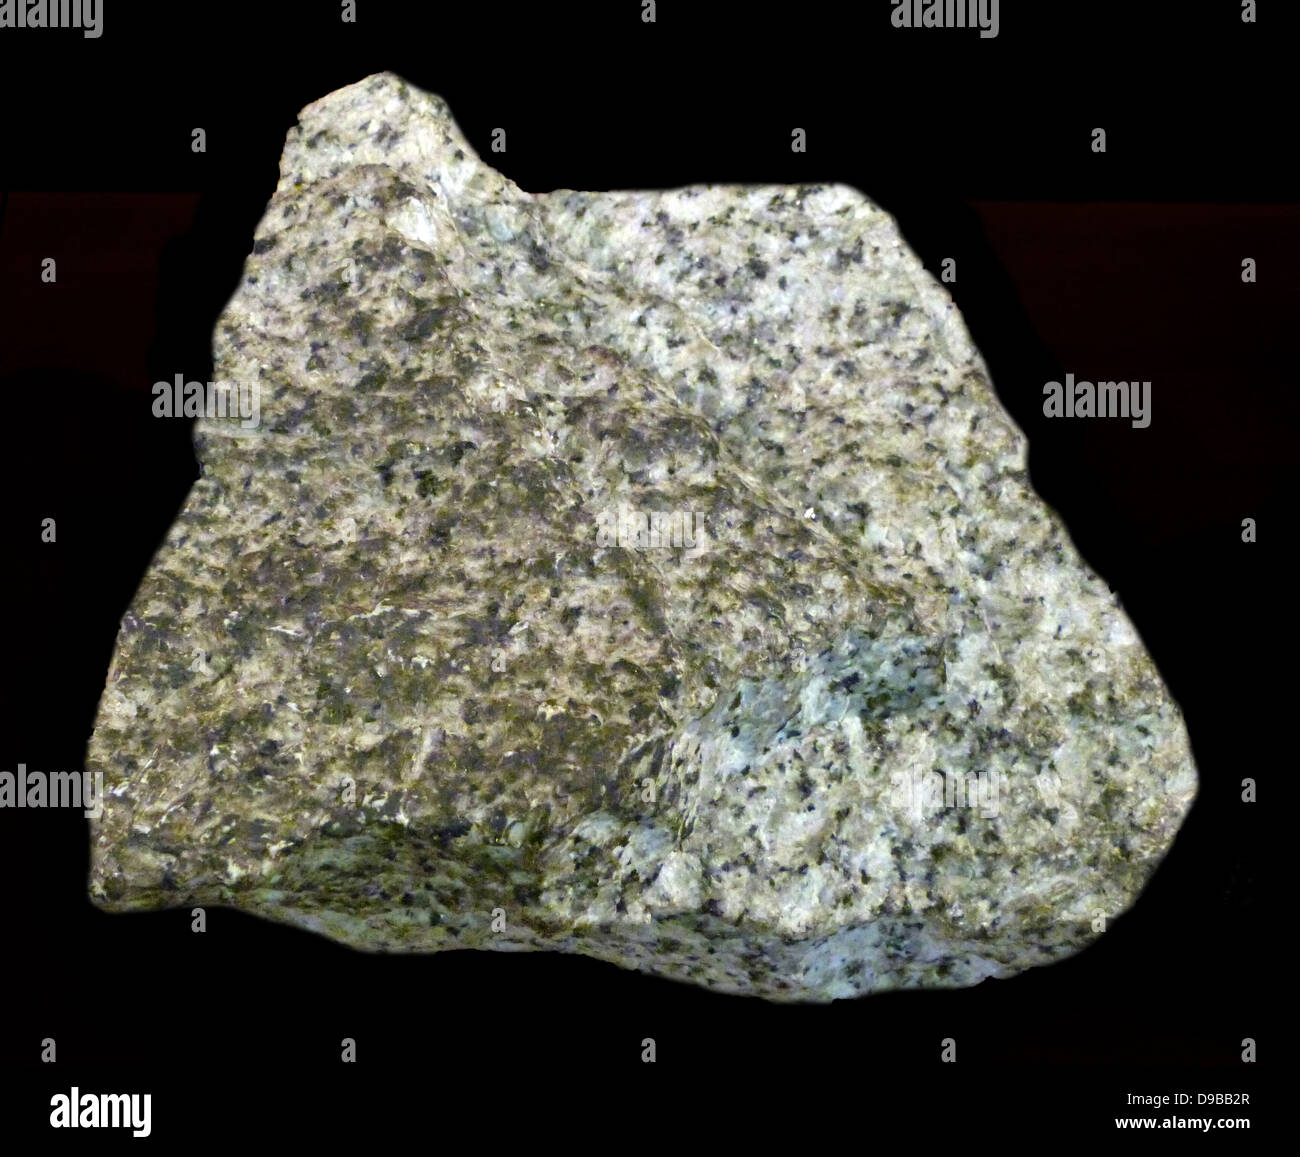 Granito - è una comune e ampiamente ricorrenti di tipo intrusivo, felsic, rocce ignee. Il granito di solito ha un a grana grossa consistenza. Di tanto in tanto alcuni singoli cristalli sono più grandi della groundmass, nel qual caso la texture è noto come porphyritic. Una roccia con questa texture è talvolta noto come porfido. Graniti può essere rosa al di colore grigio. Foto Stock